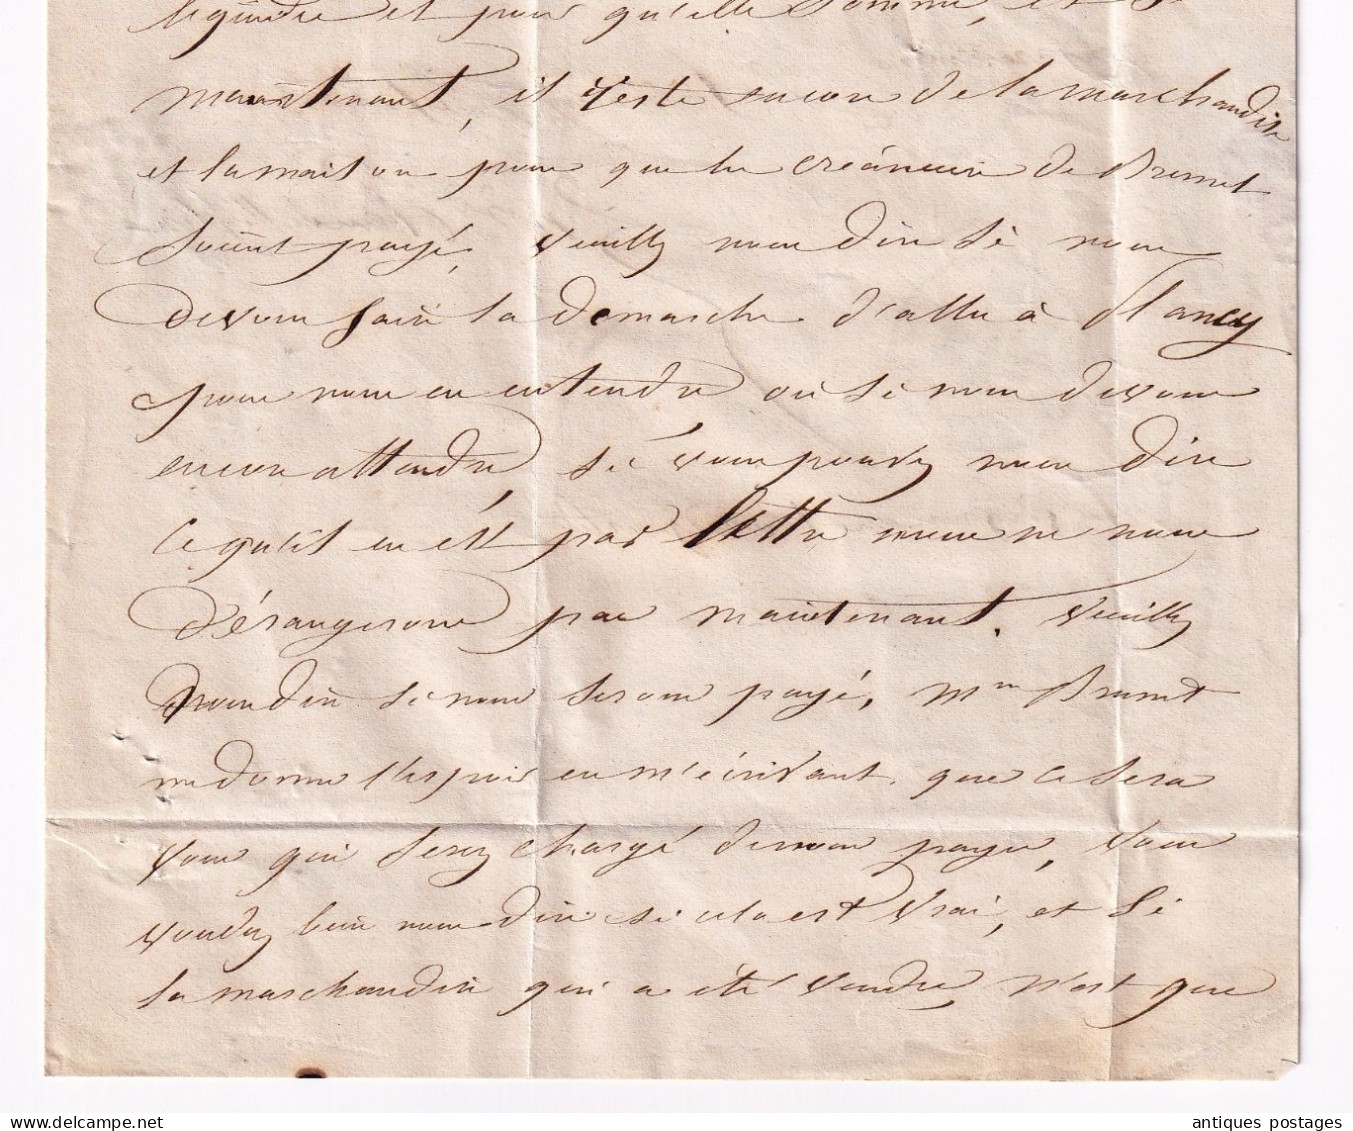 Lettre 1859 Arcis sur Aube pour Plancy l'Abbaye Napoléon III 20 centimes Non Dentelé 4 belles marges